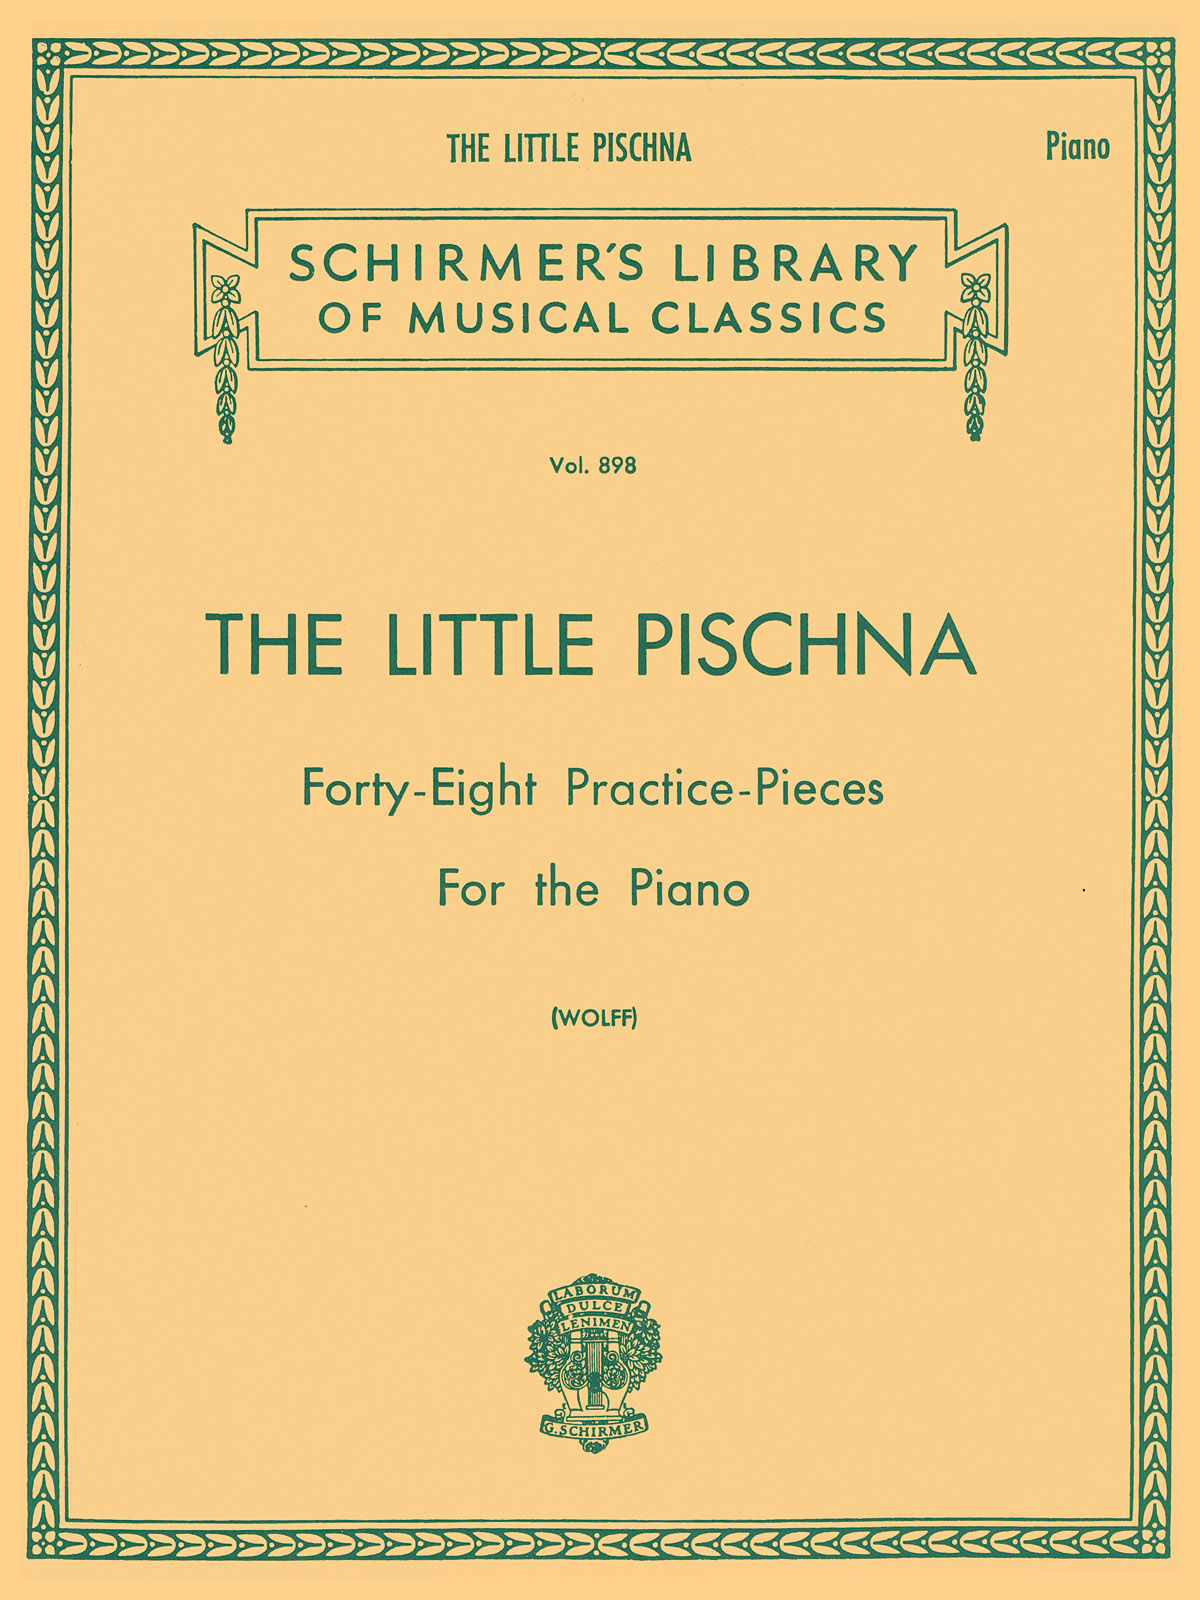 Johann Pischina: The Little Pischna